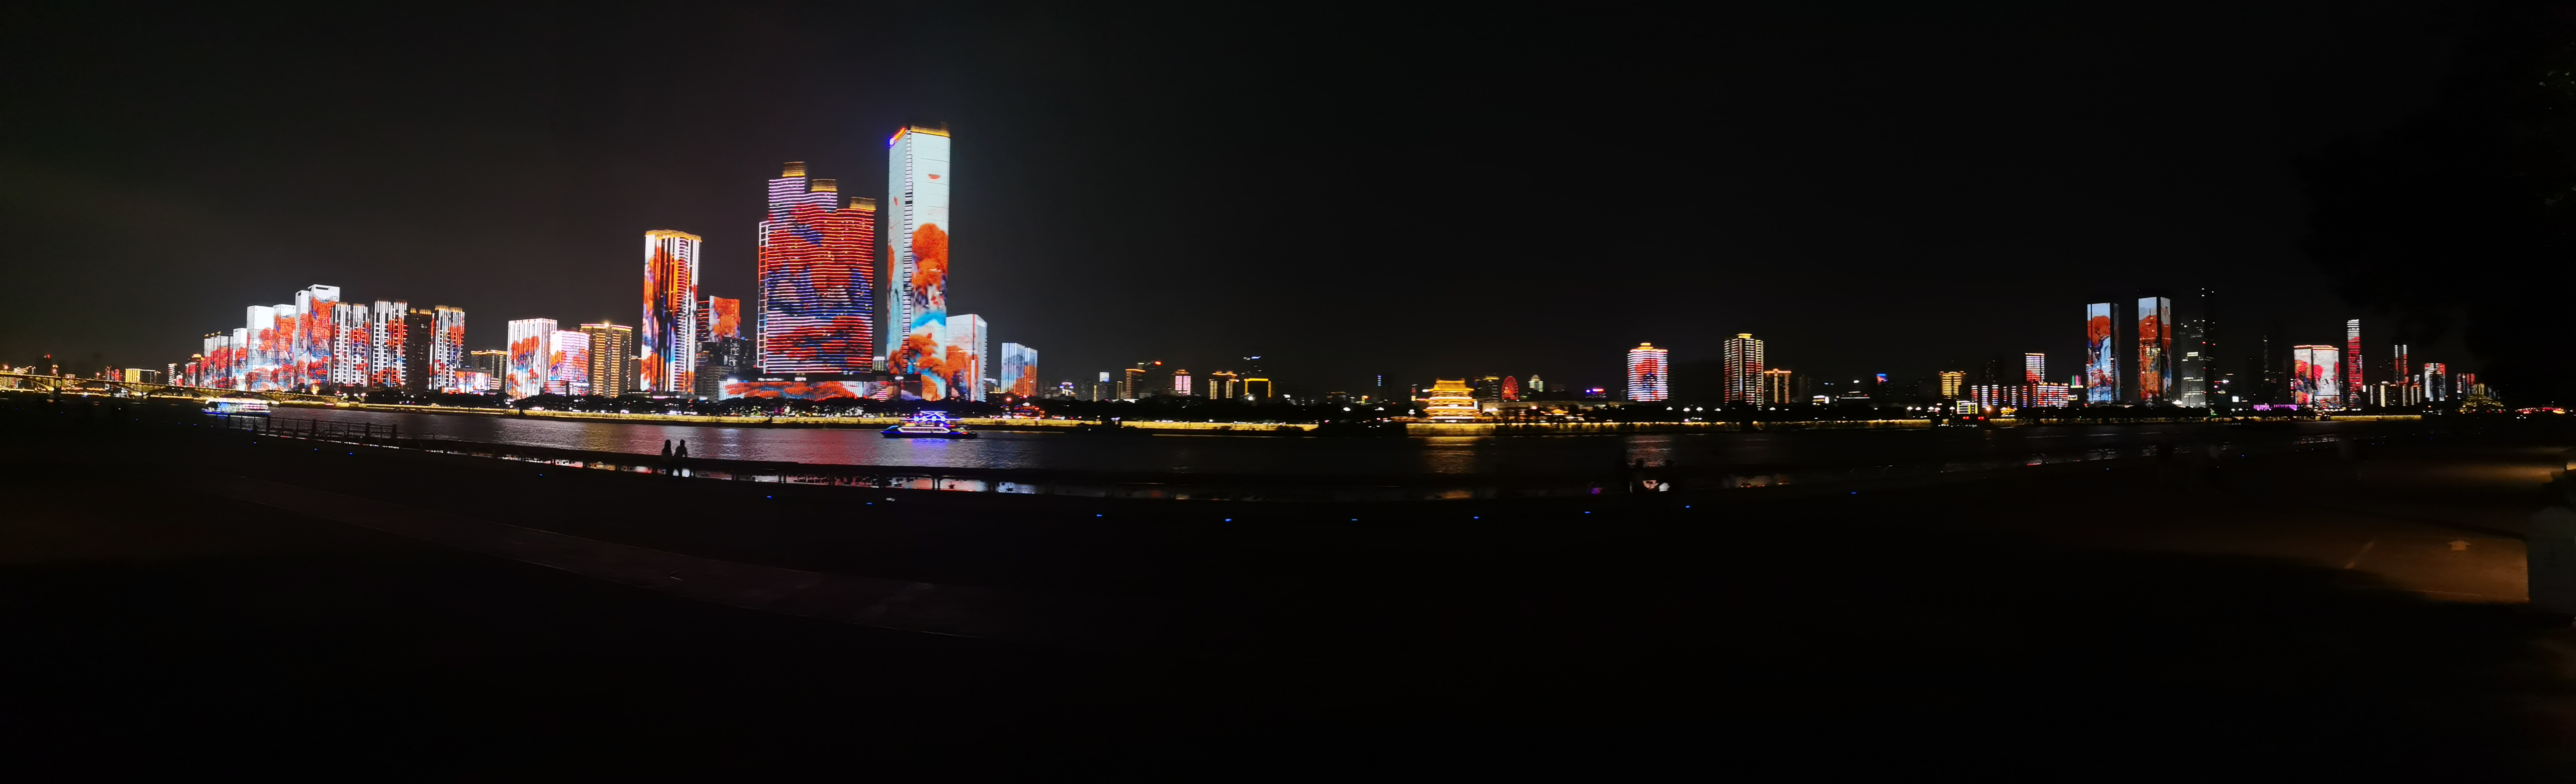 长沙夜景照片真实图片